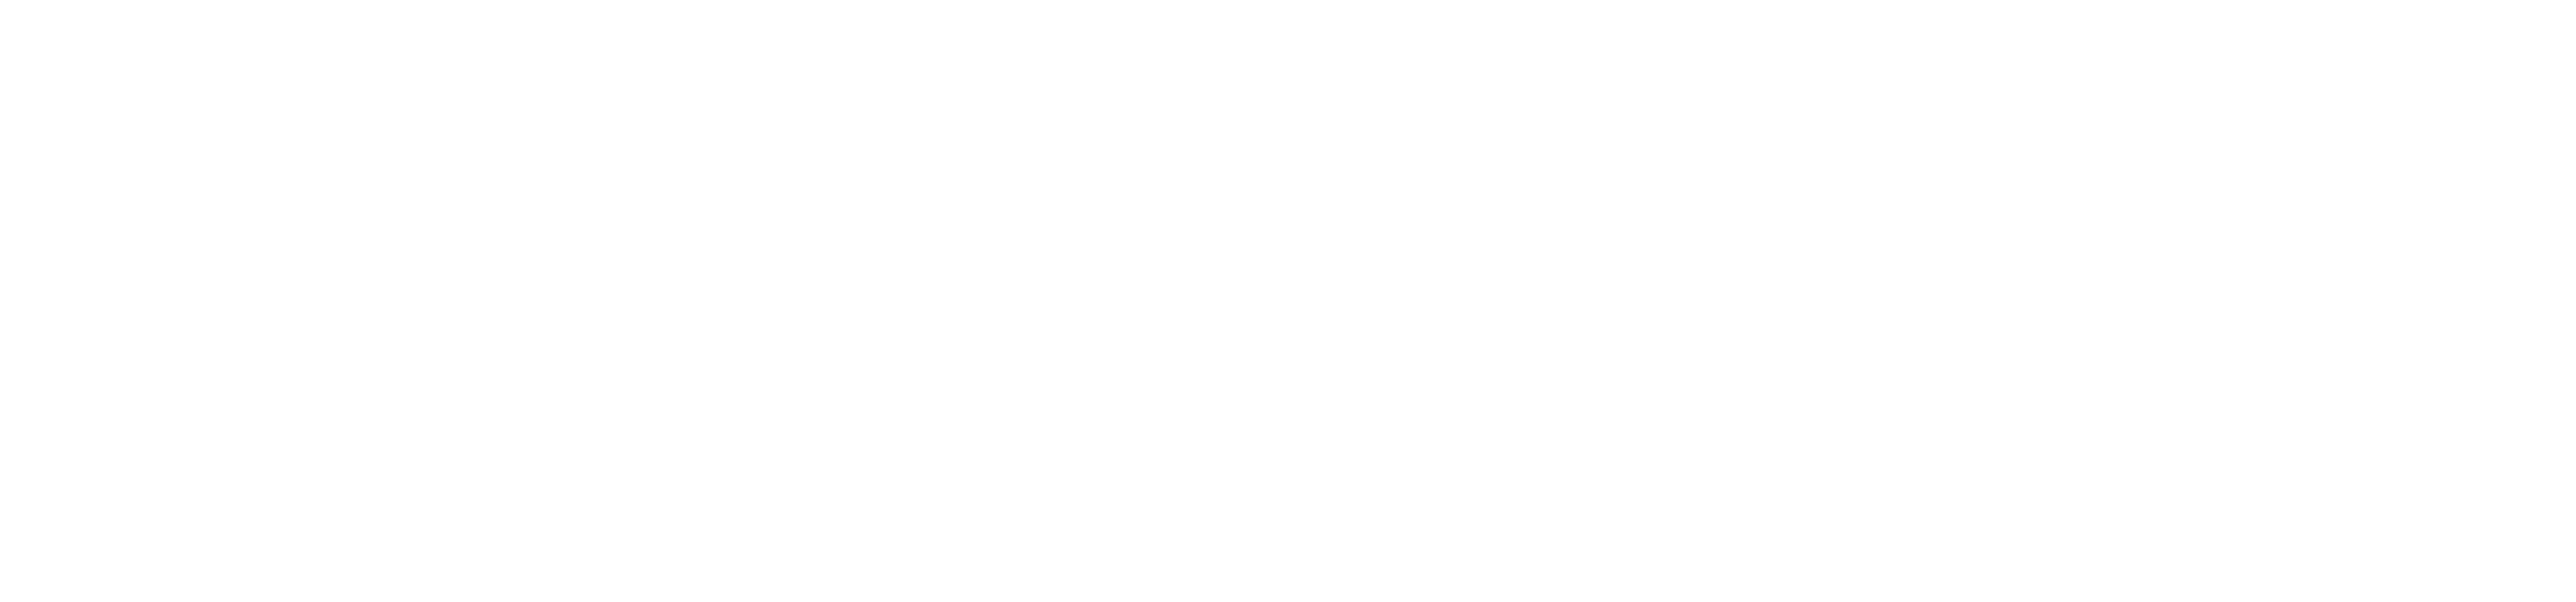 PEAK Security